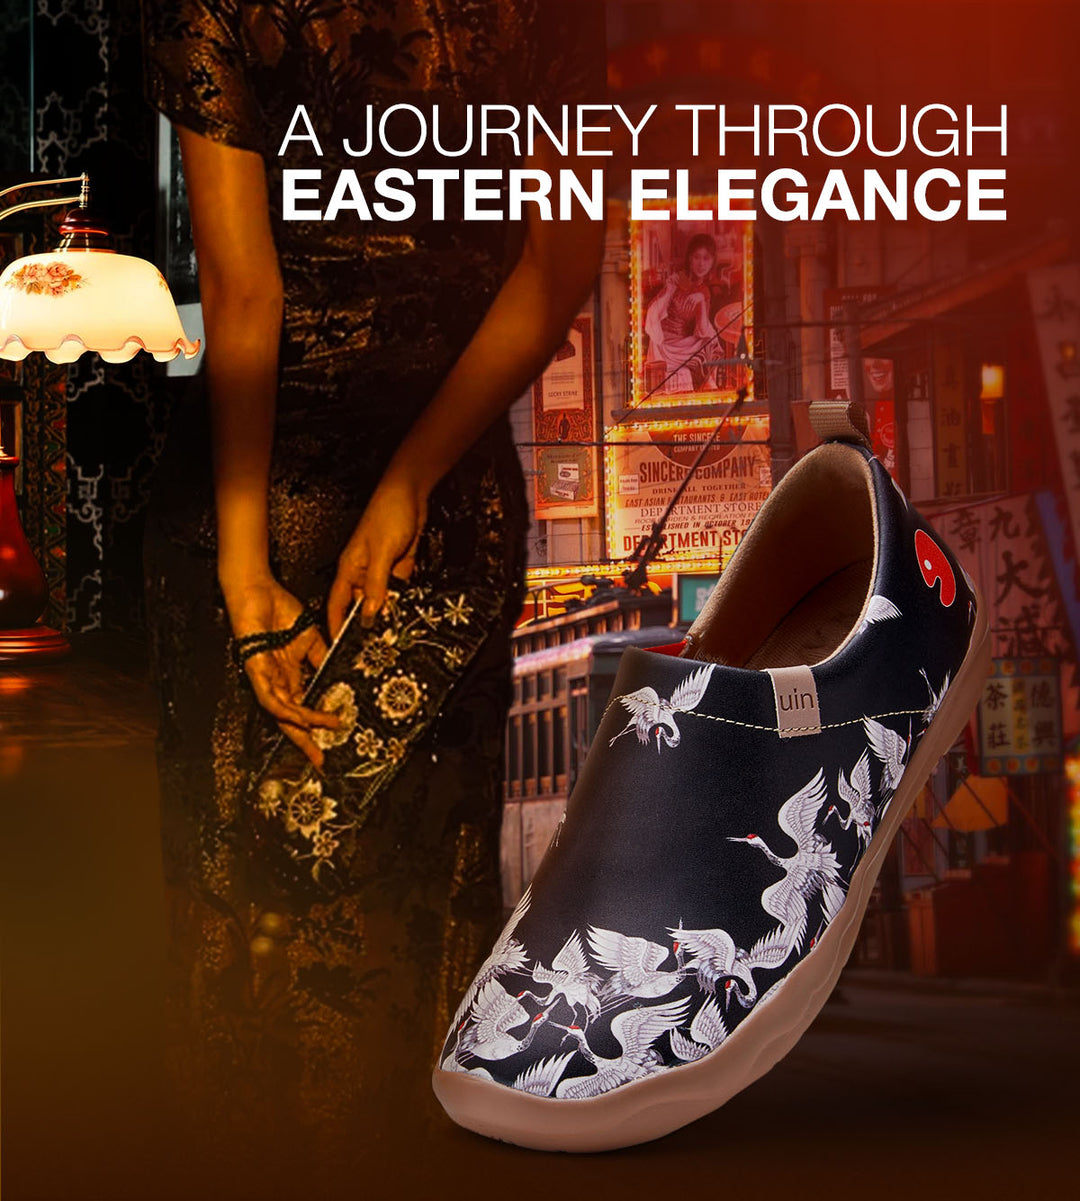 A Journey through Eastern Elegance